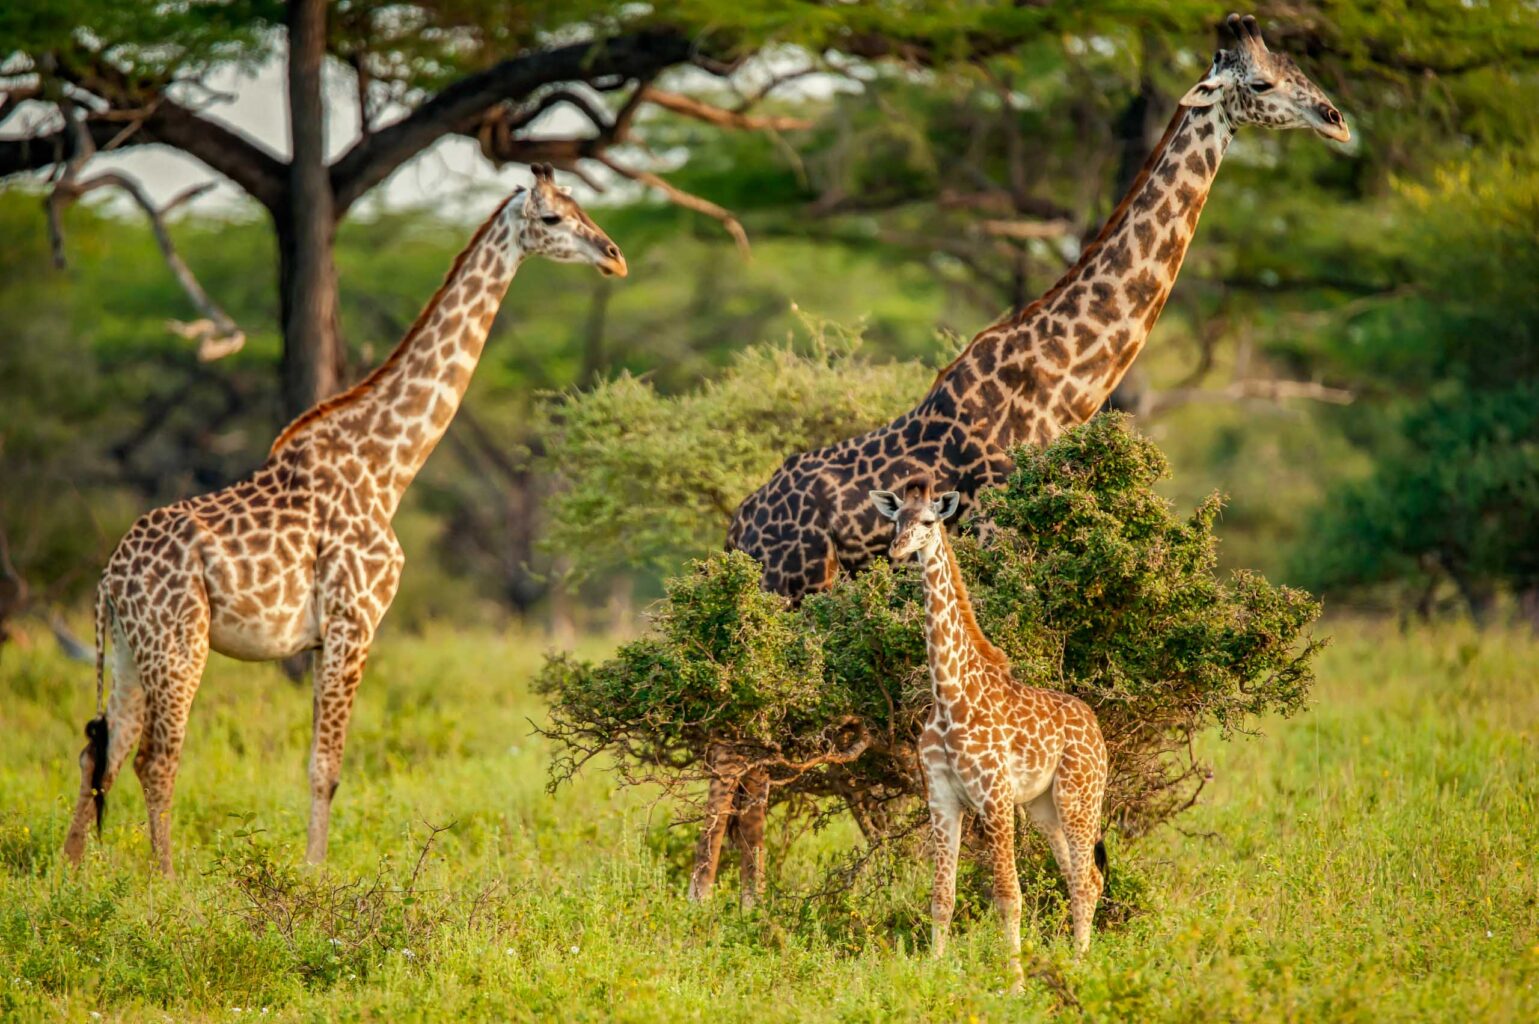 A family of giraffes.